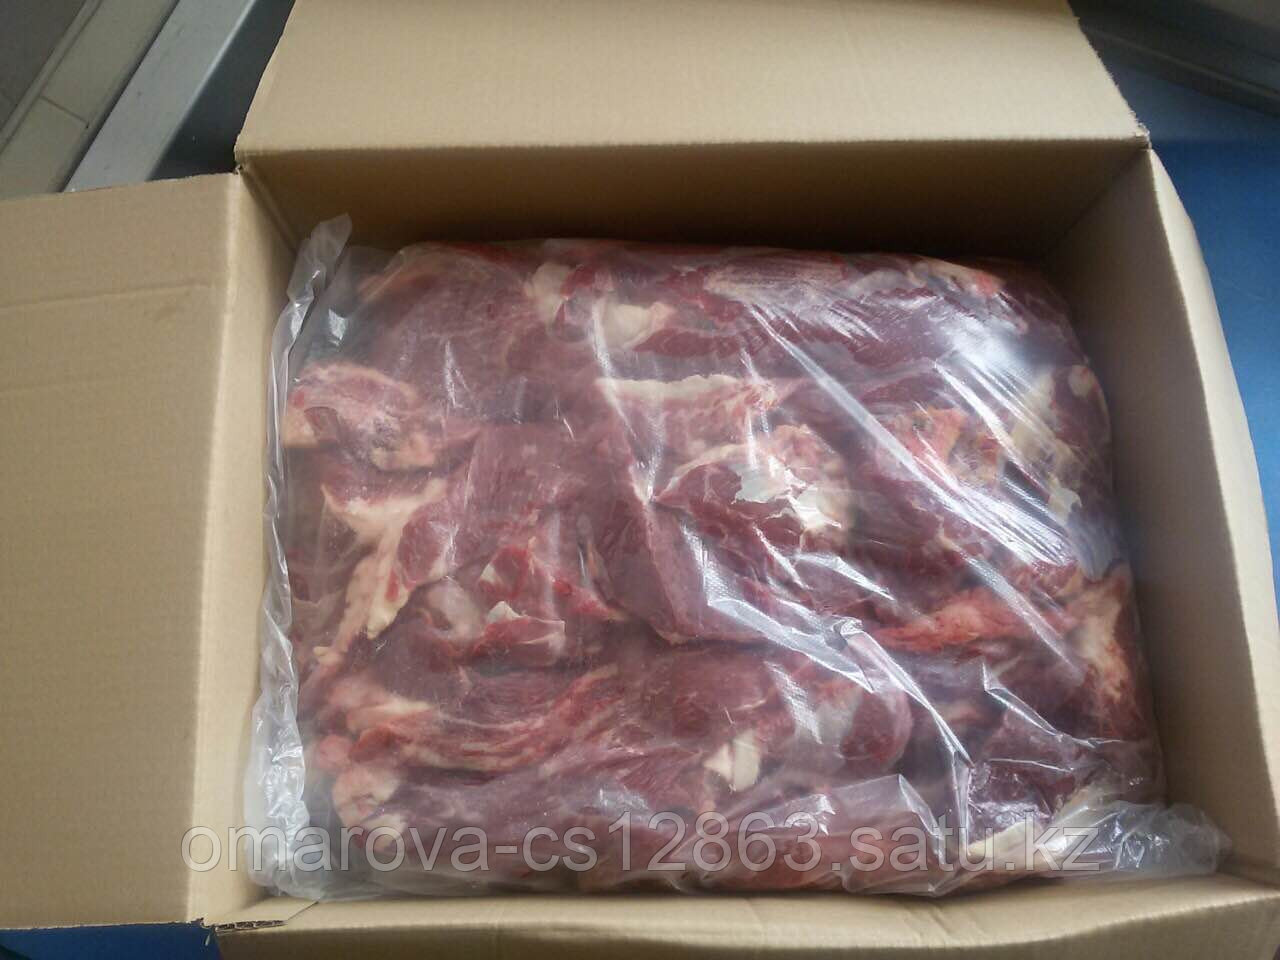   Мясо говяжье качественное блочное Белорусское мясо